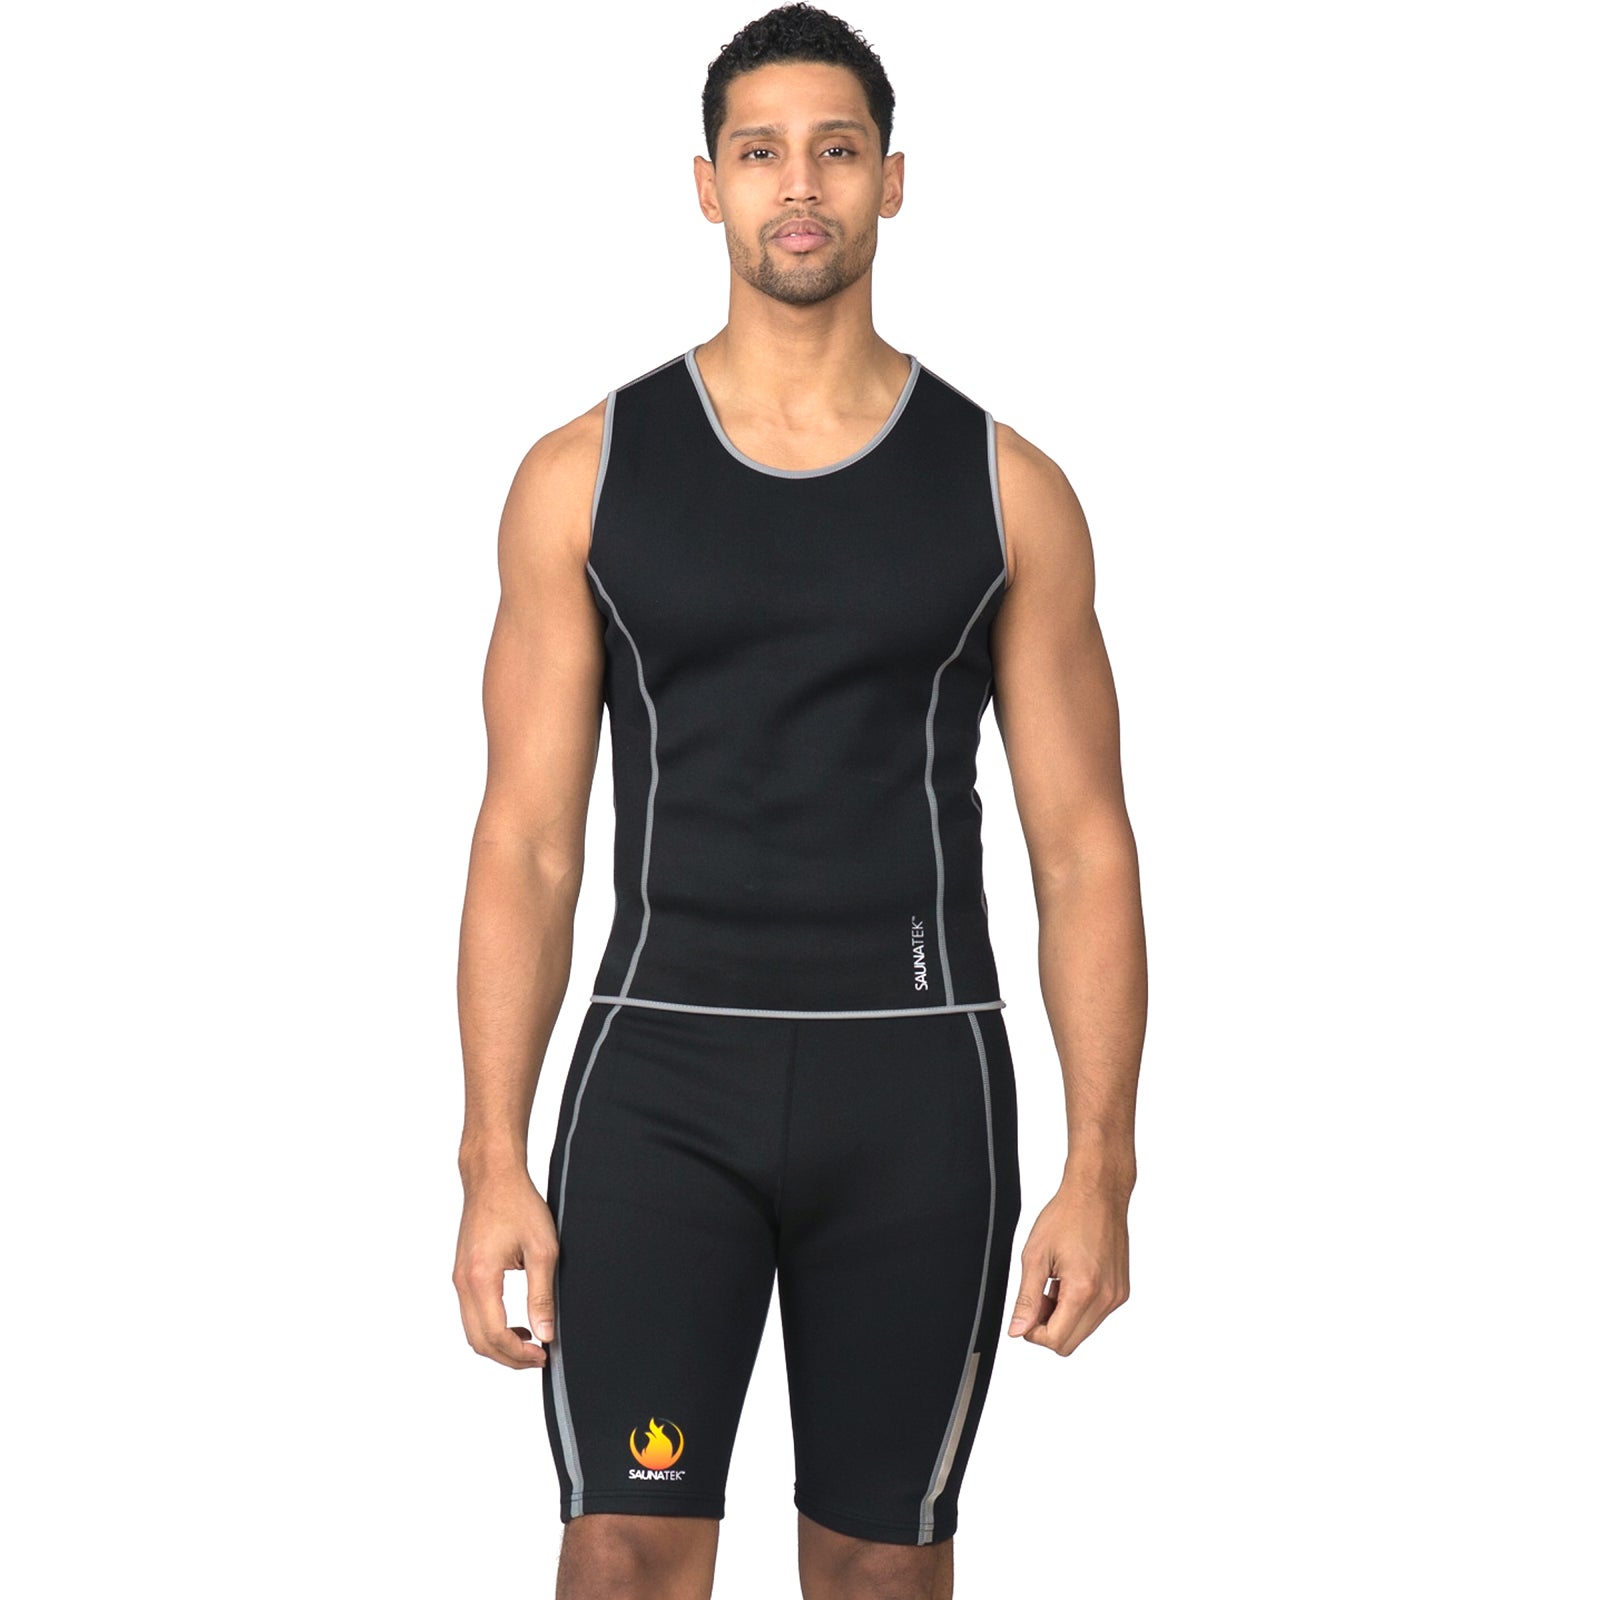 SMNE Men Neoprene Sauna Suit Waist Trainer Vest ZipperTank Top Trimmer Body  Shaper with Two Belt, Body Shaper Workout Suit Zipper Short Sleeve Shapewear  Vest (L) price in UAE,  UAE